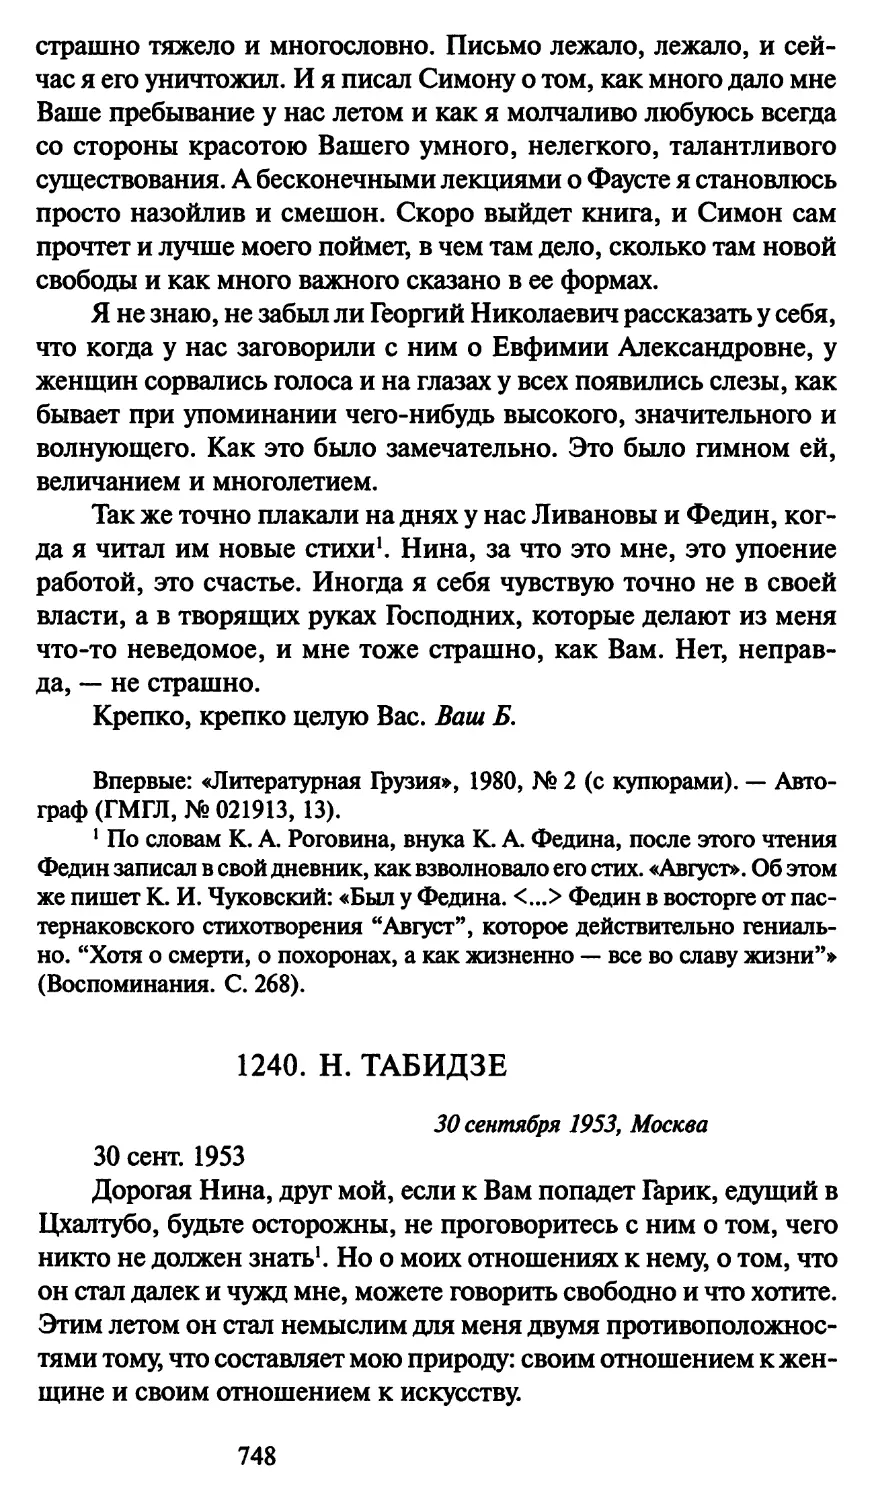 1240. Н. Табидзе 30 сентября 1953